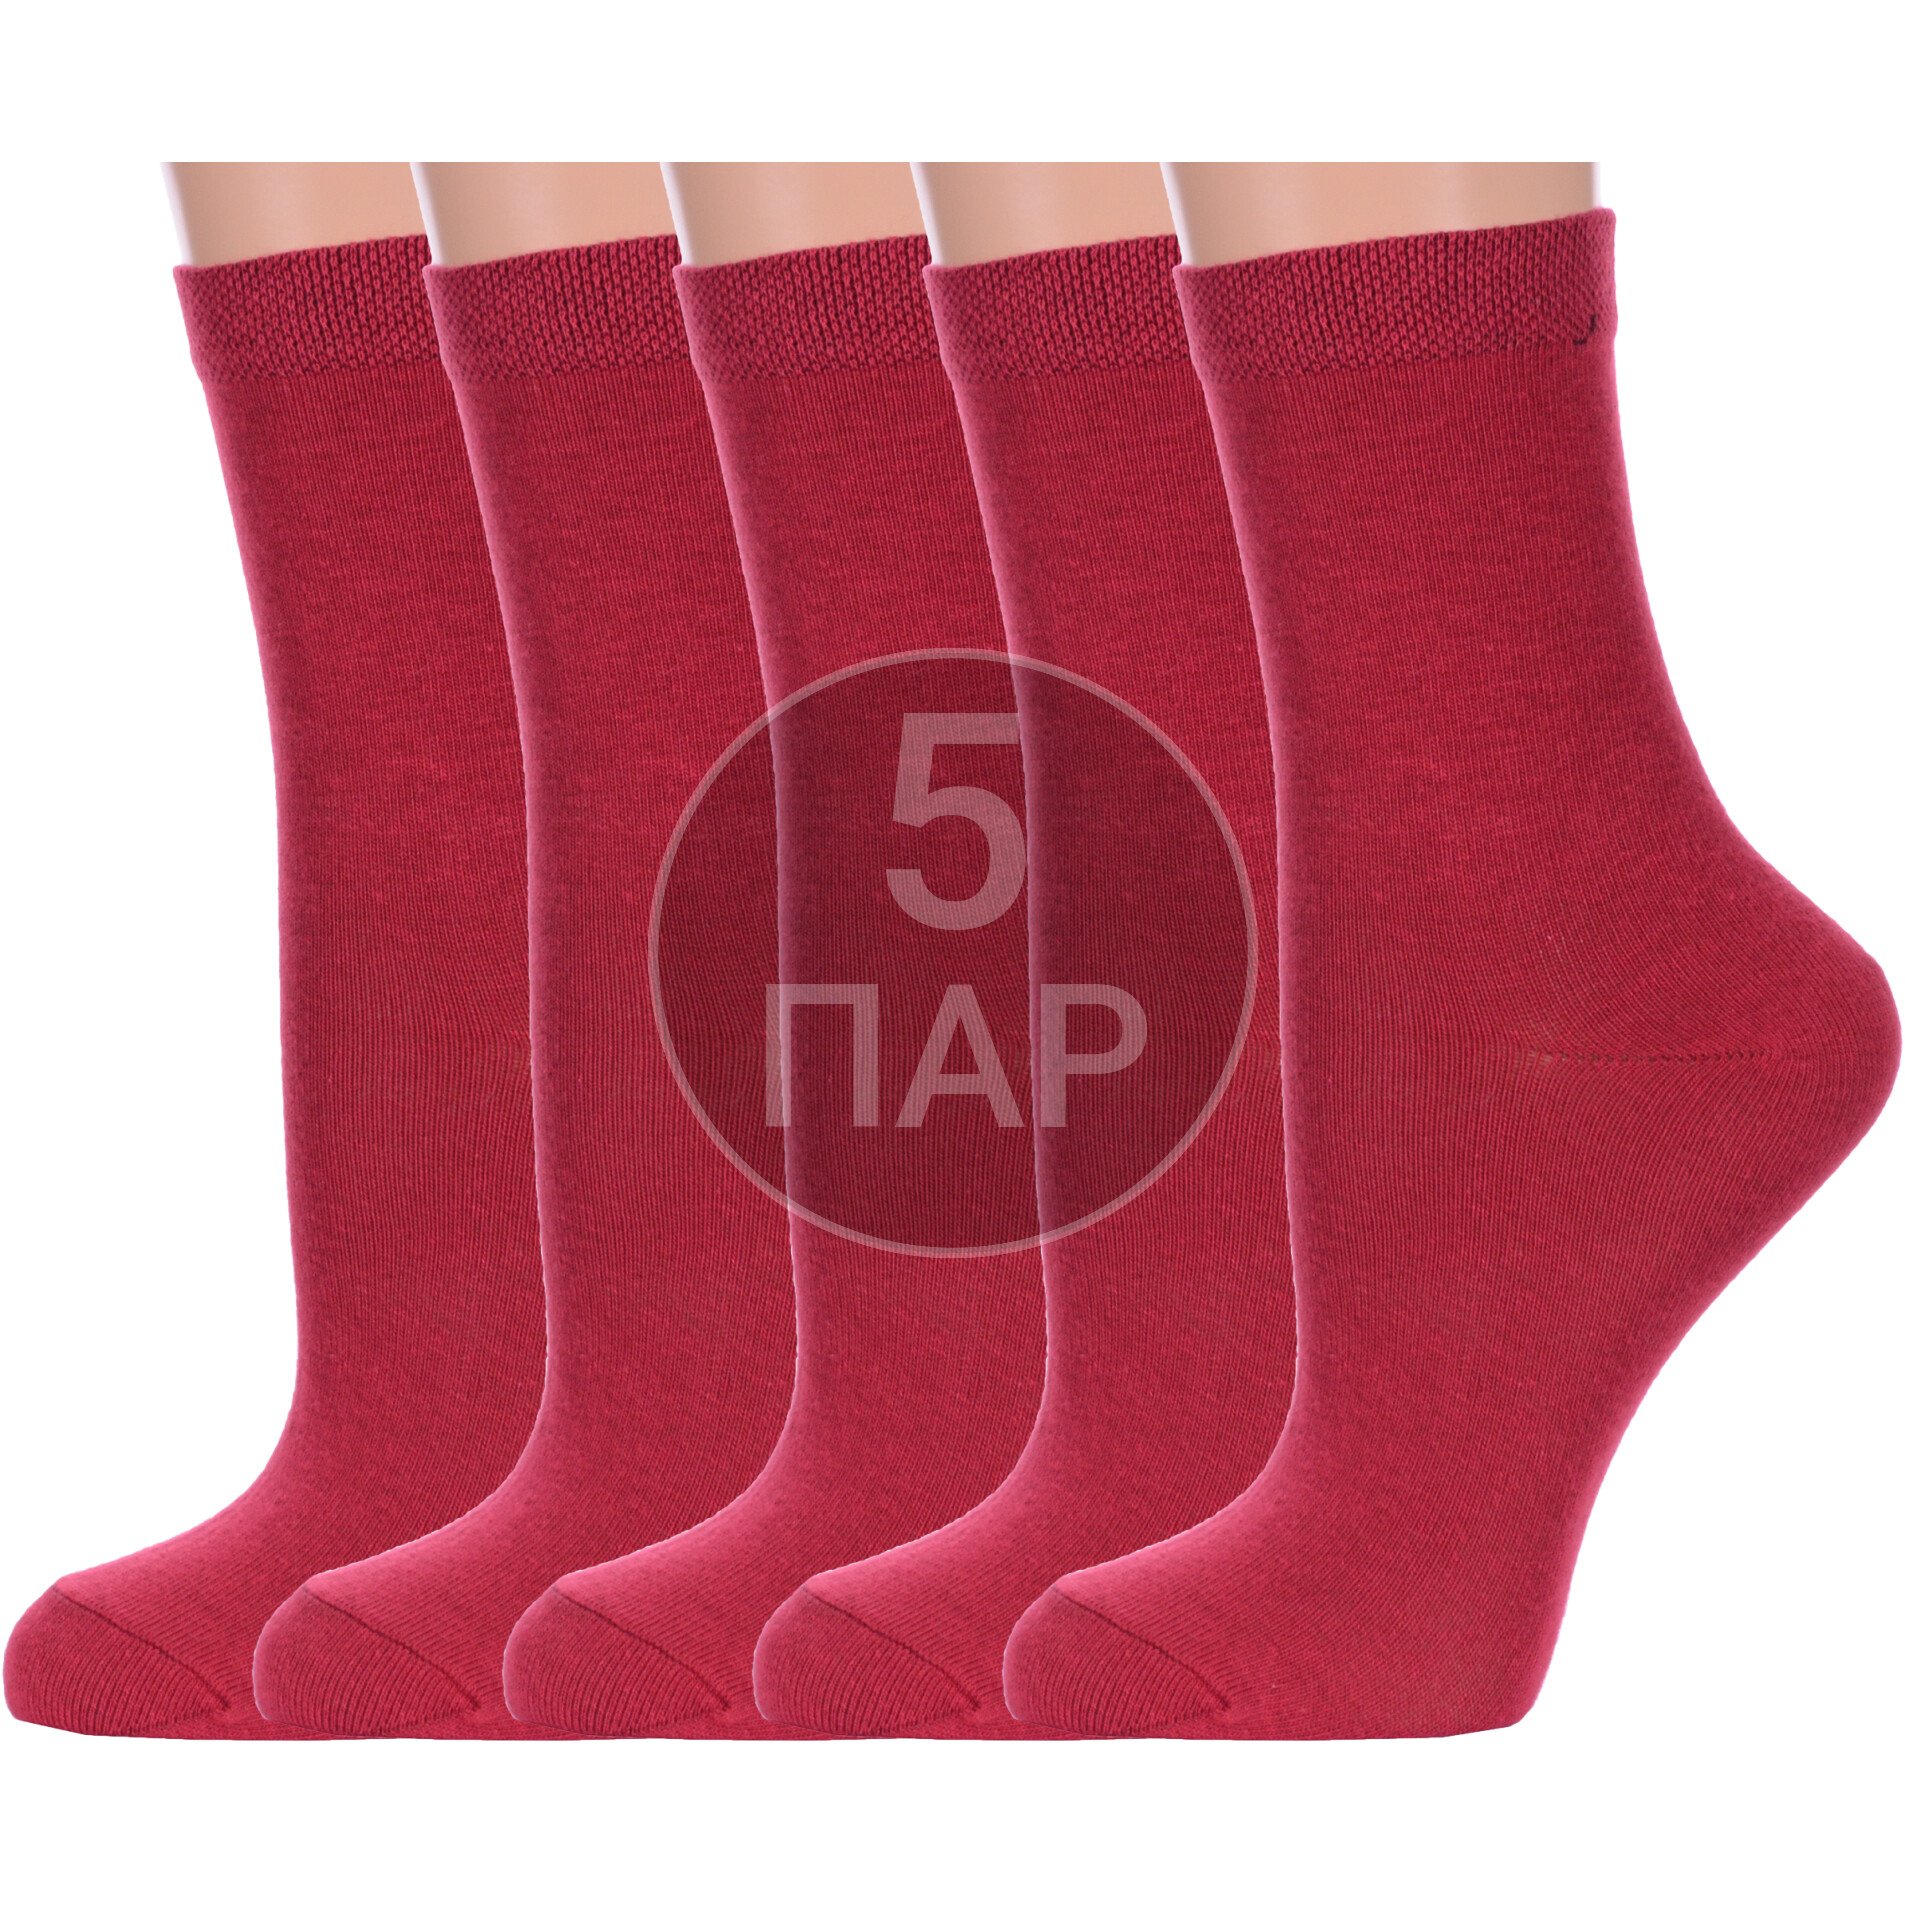 Комплект носков женских Para Socks 5-L1 бордовых 23, 5 пар